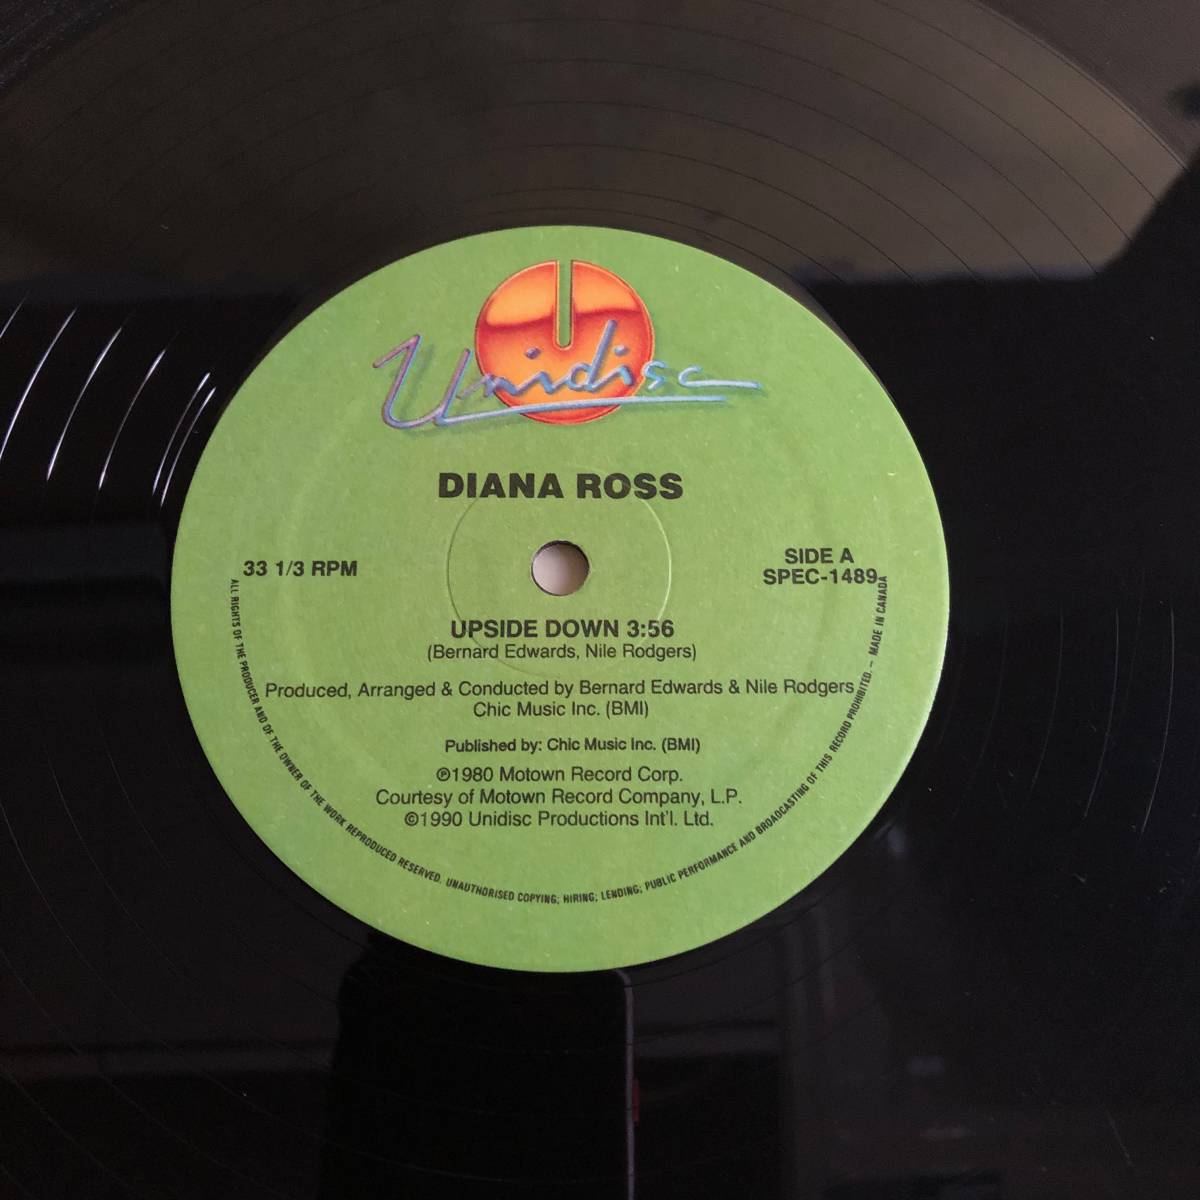 中古LPレコード Diana Ross / Taylor Dayne Upside Down / Tell It To My Heart カナダ盤 12"シングル_画像4